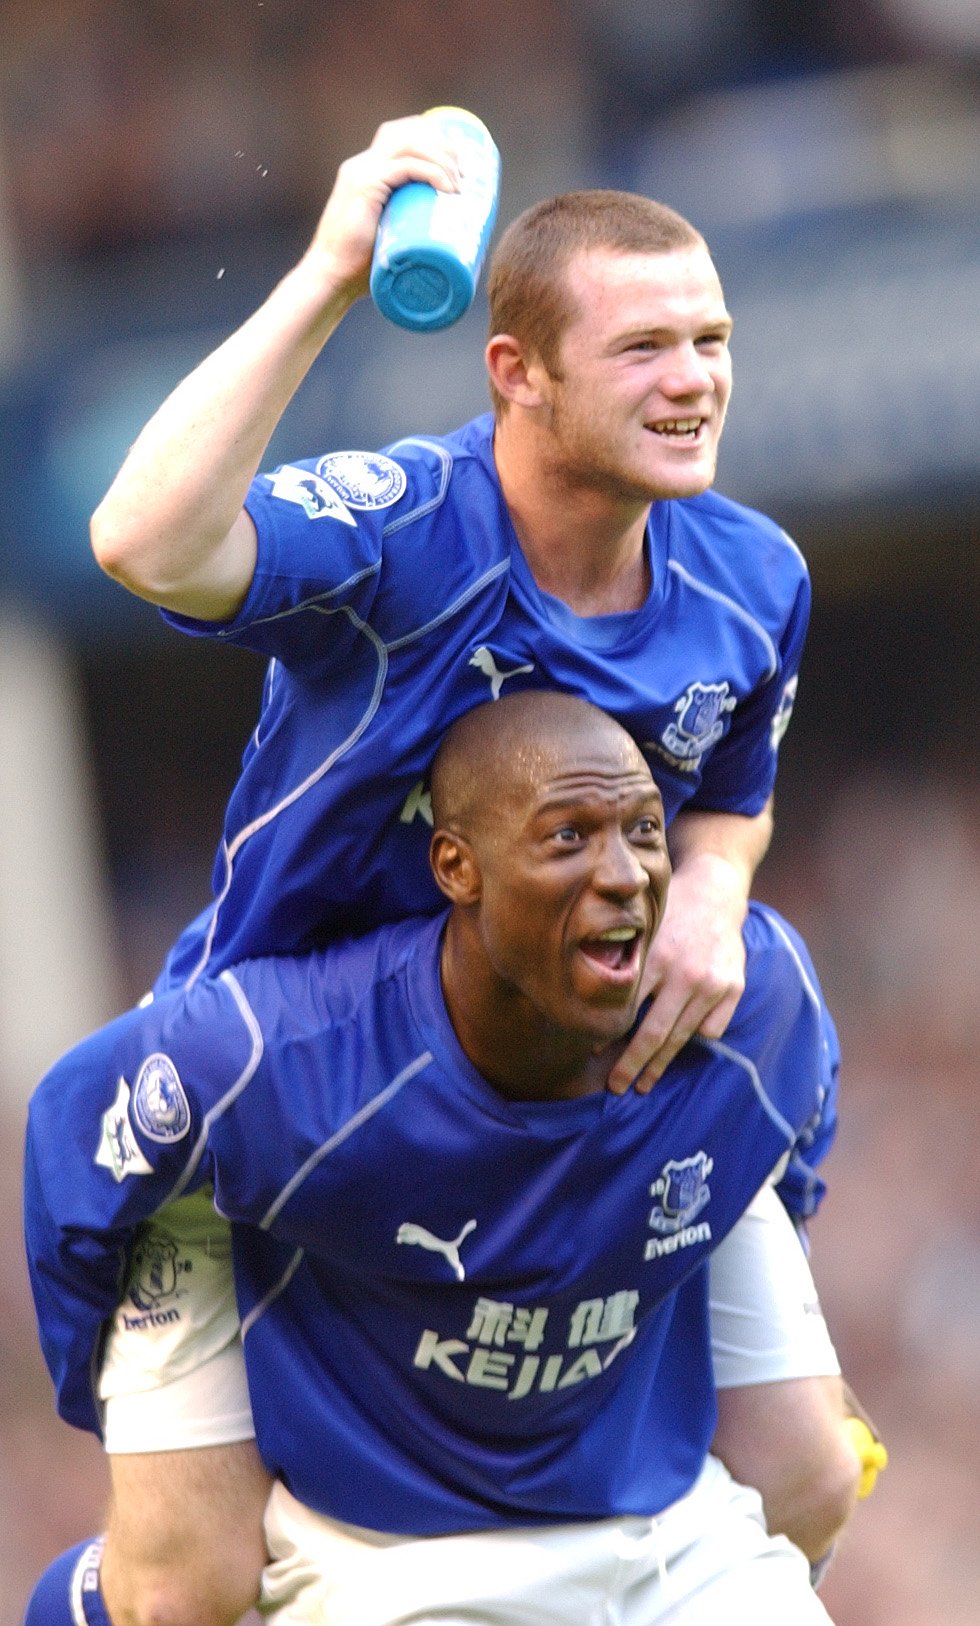 Campbell spielte zwischen 1999 und 2005 für Everton